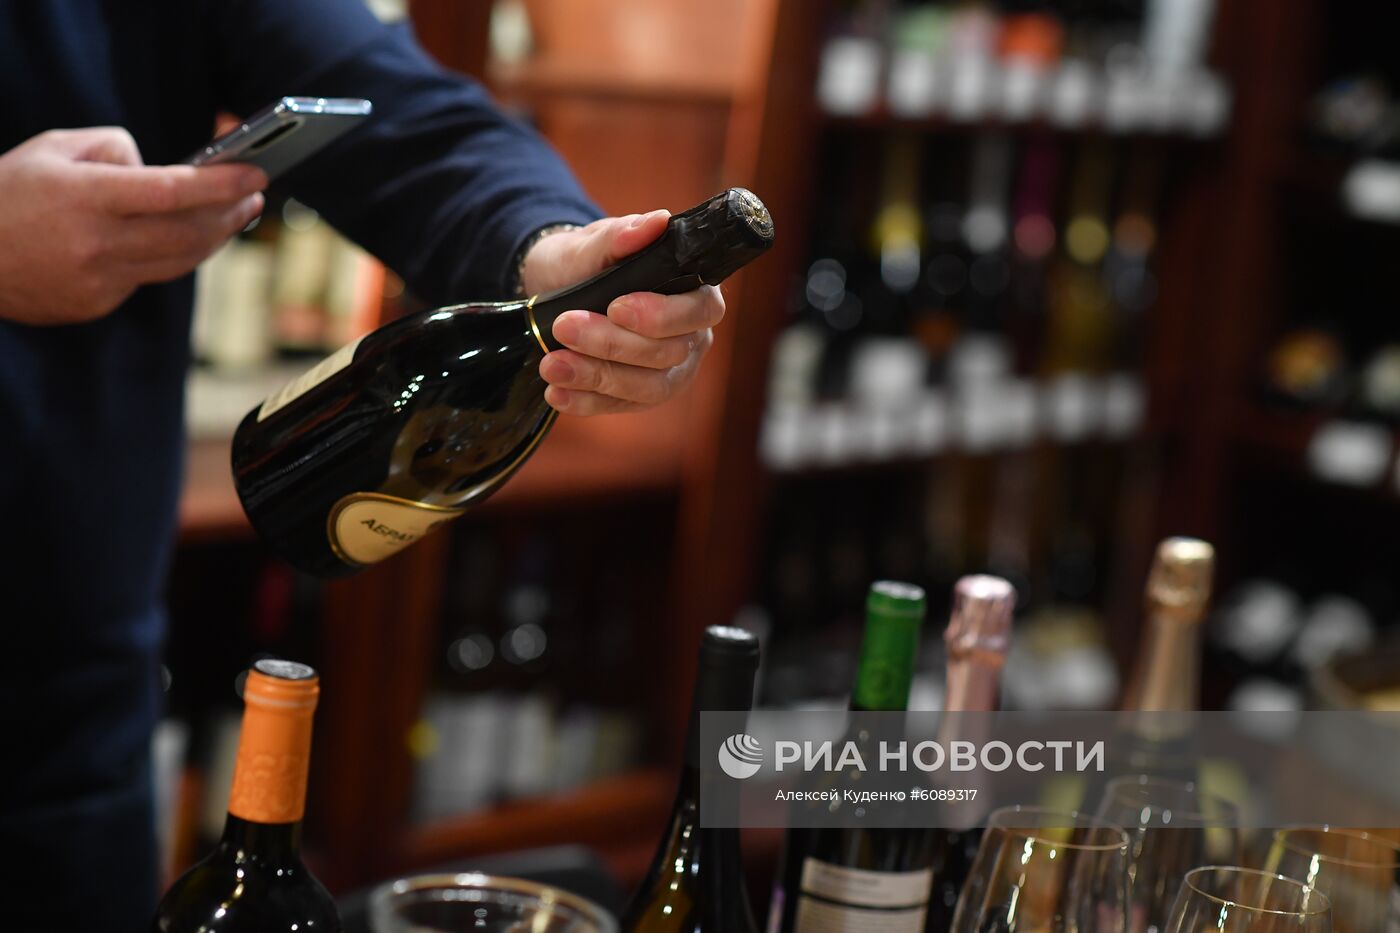 Дегустация российских вин в винотеке Vino Birra Bar в Москве